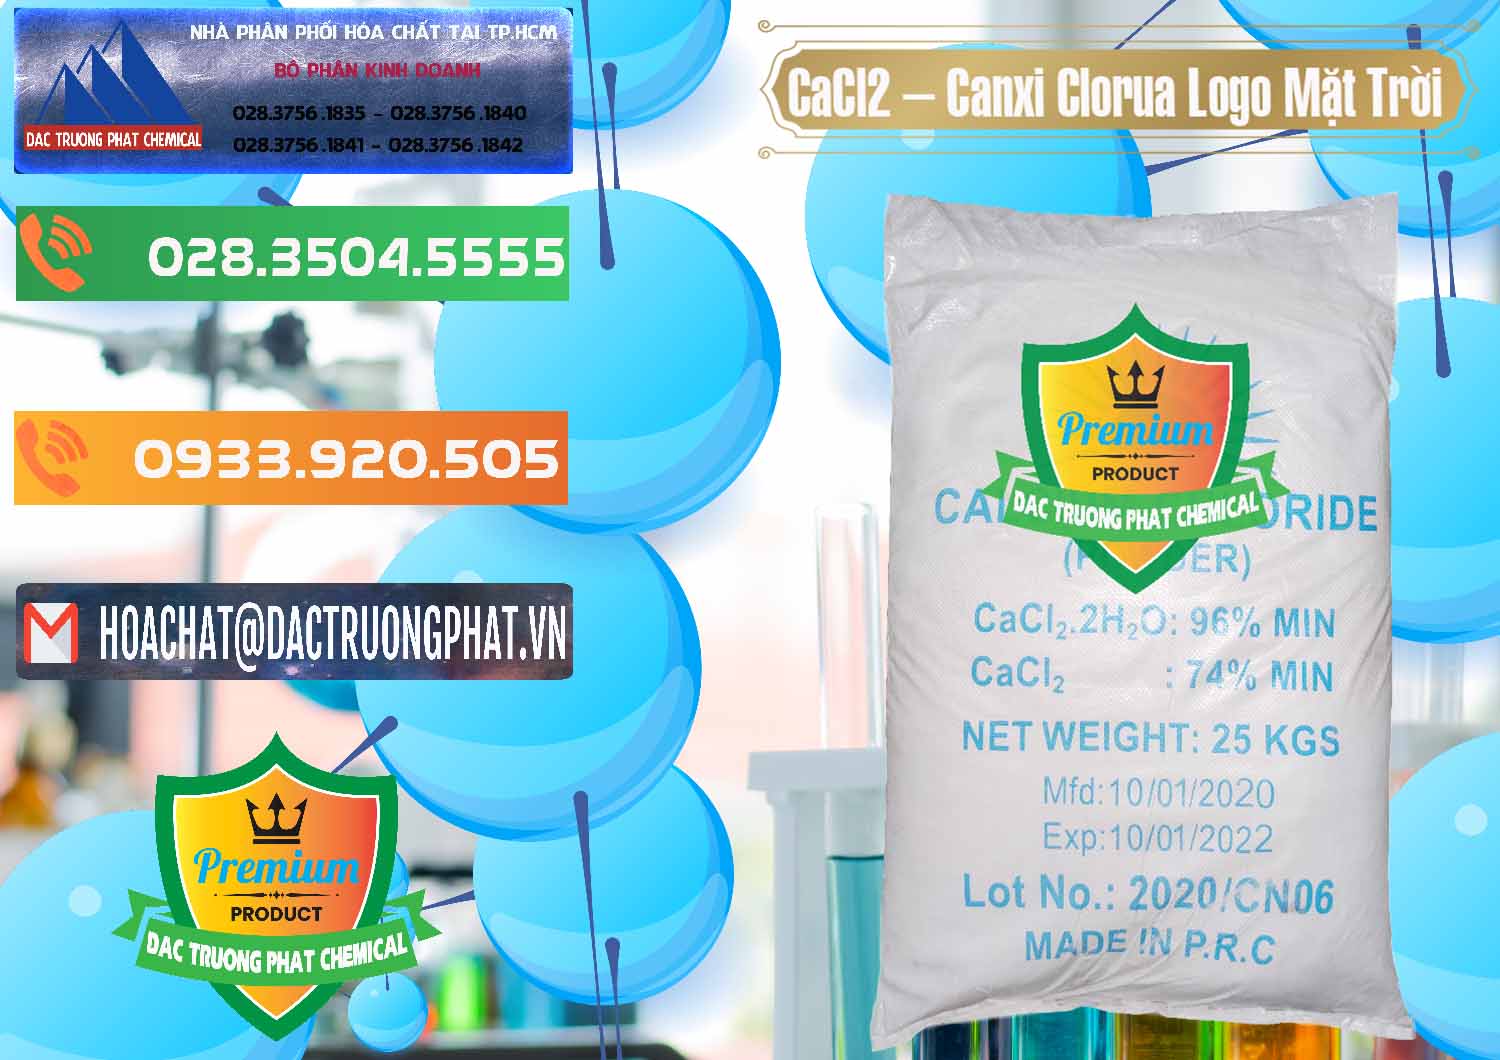 Cty phân phối _ bán CaCl2 – Canxi Clorua 96% Logo Mặt Trời Trung Quốc China - 0041 - Nơi cung cấp & phân phối hóa chất tại TP.HCM - hoachatxulynuoc.com.vn